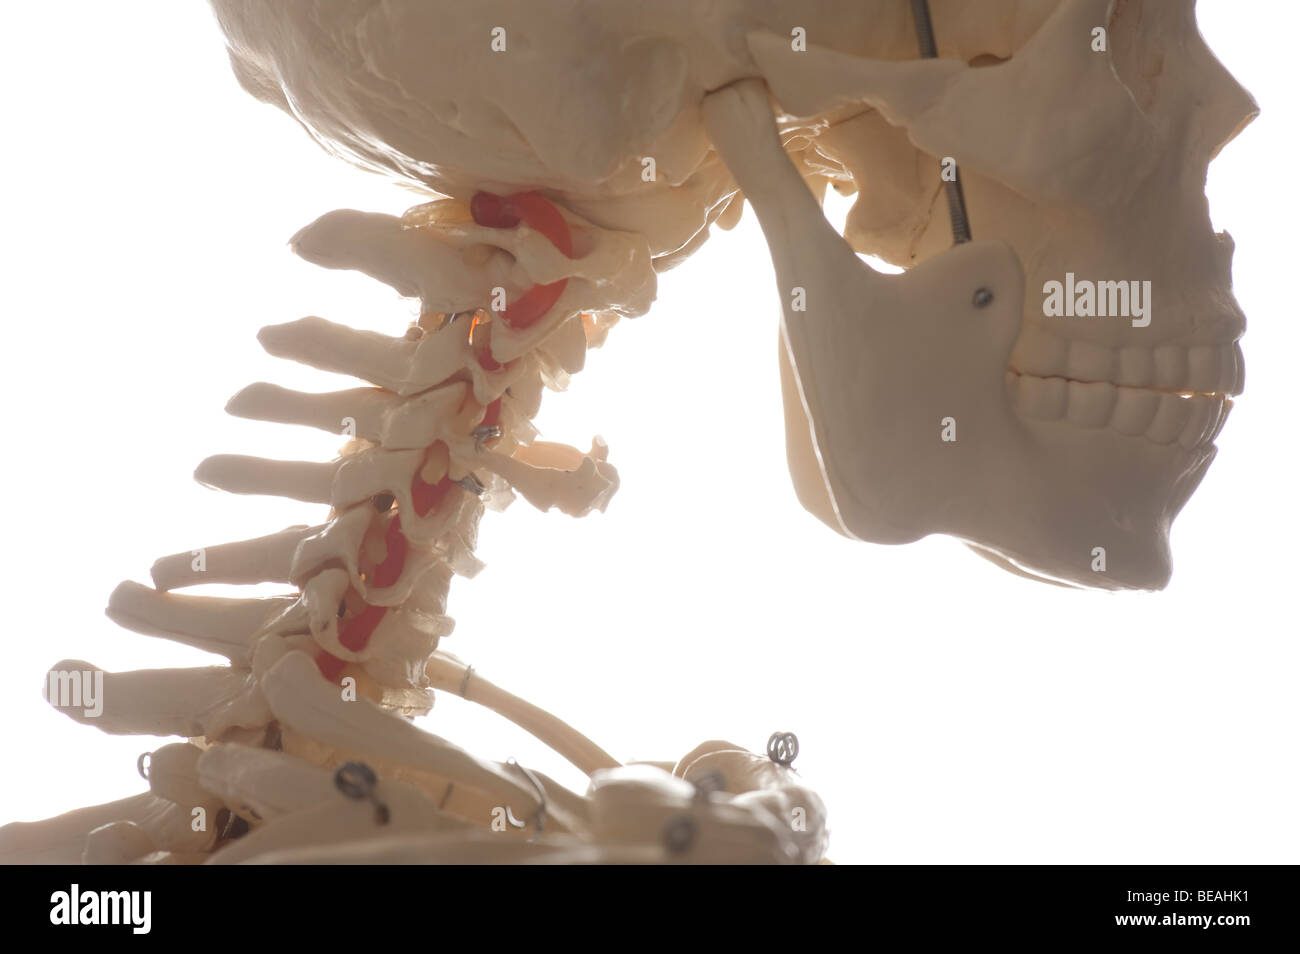 menschlicher Schädel und Wirbelsäule teilweise Skelett Stockfoto